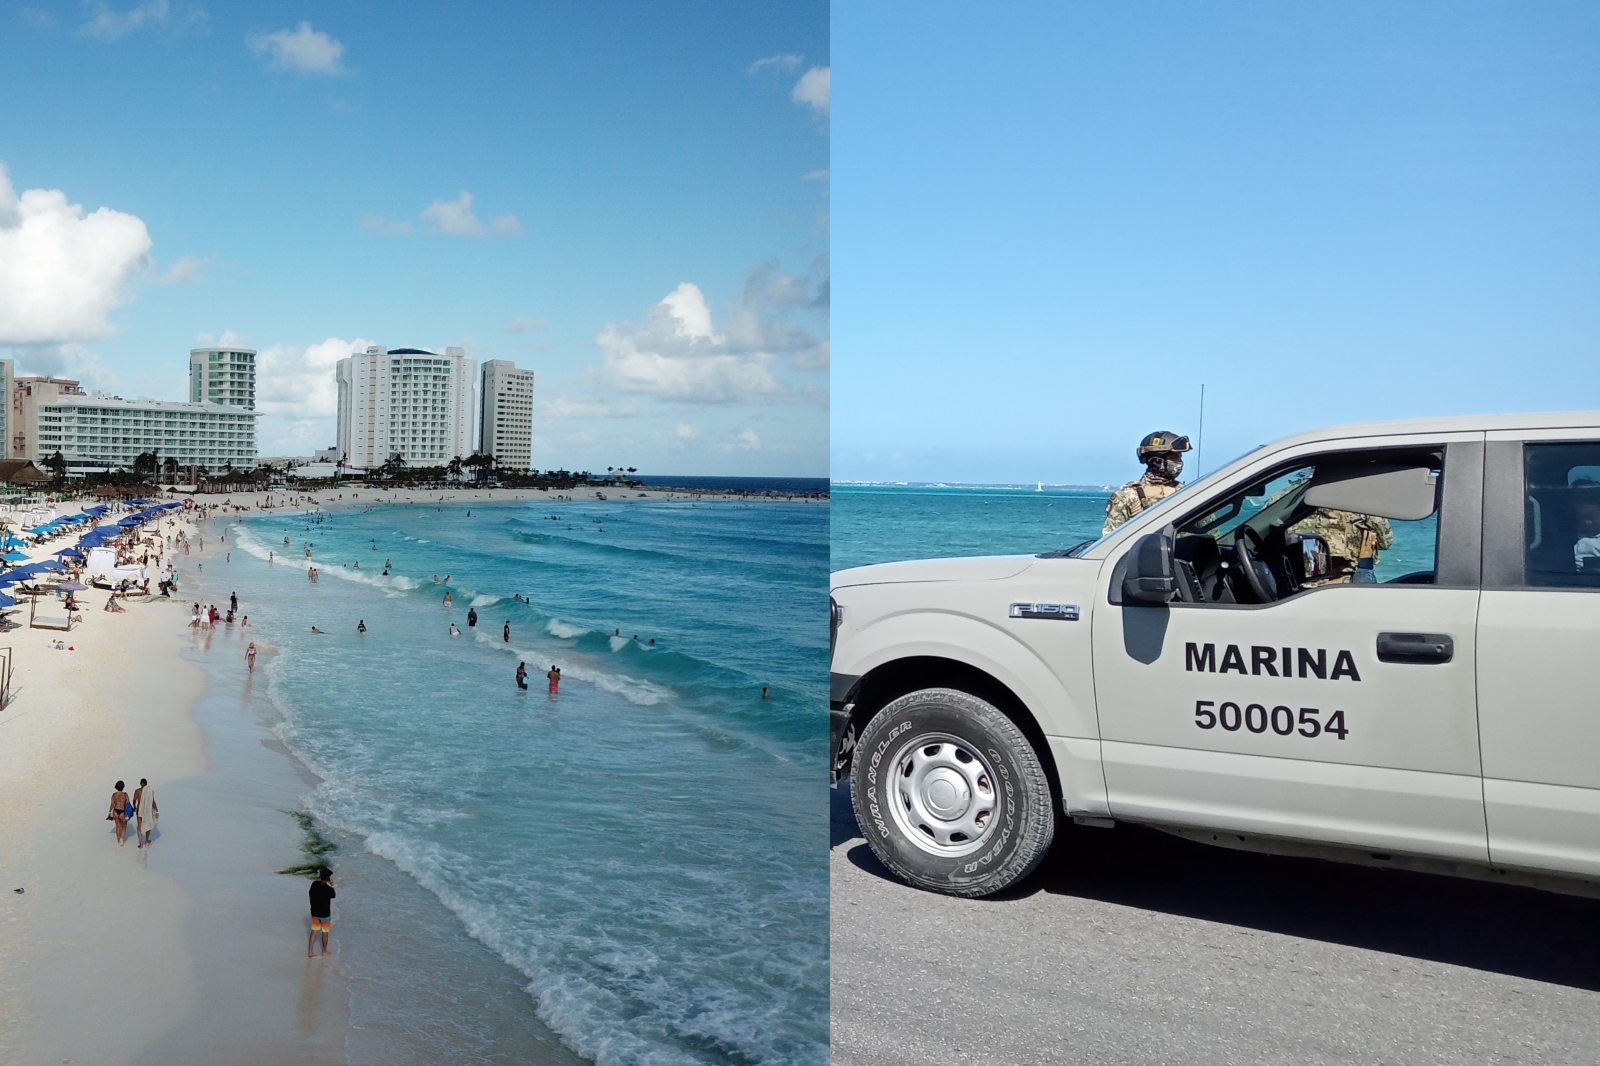 Los menores rescatados tras un operativo en la Zona Hotelera de Cancún fueron entregados al Sistema DIF de la ciudad